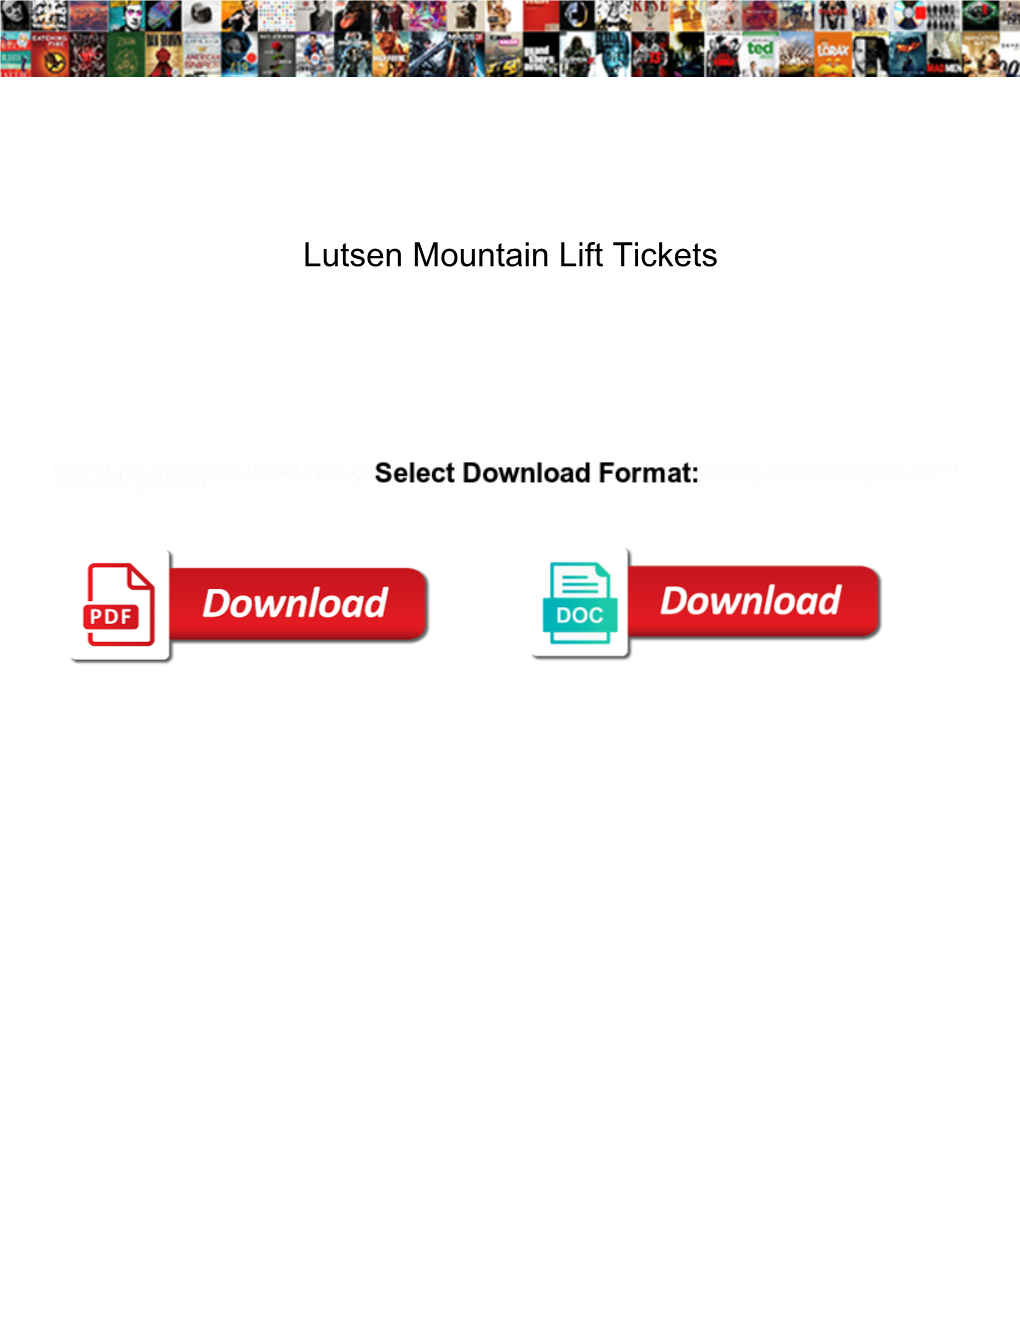 Lutsen Mountain Lift Tickets